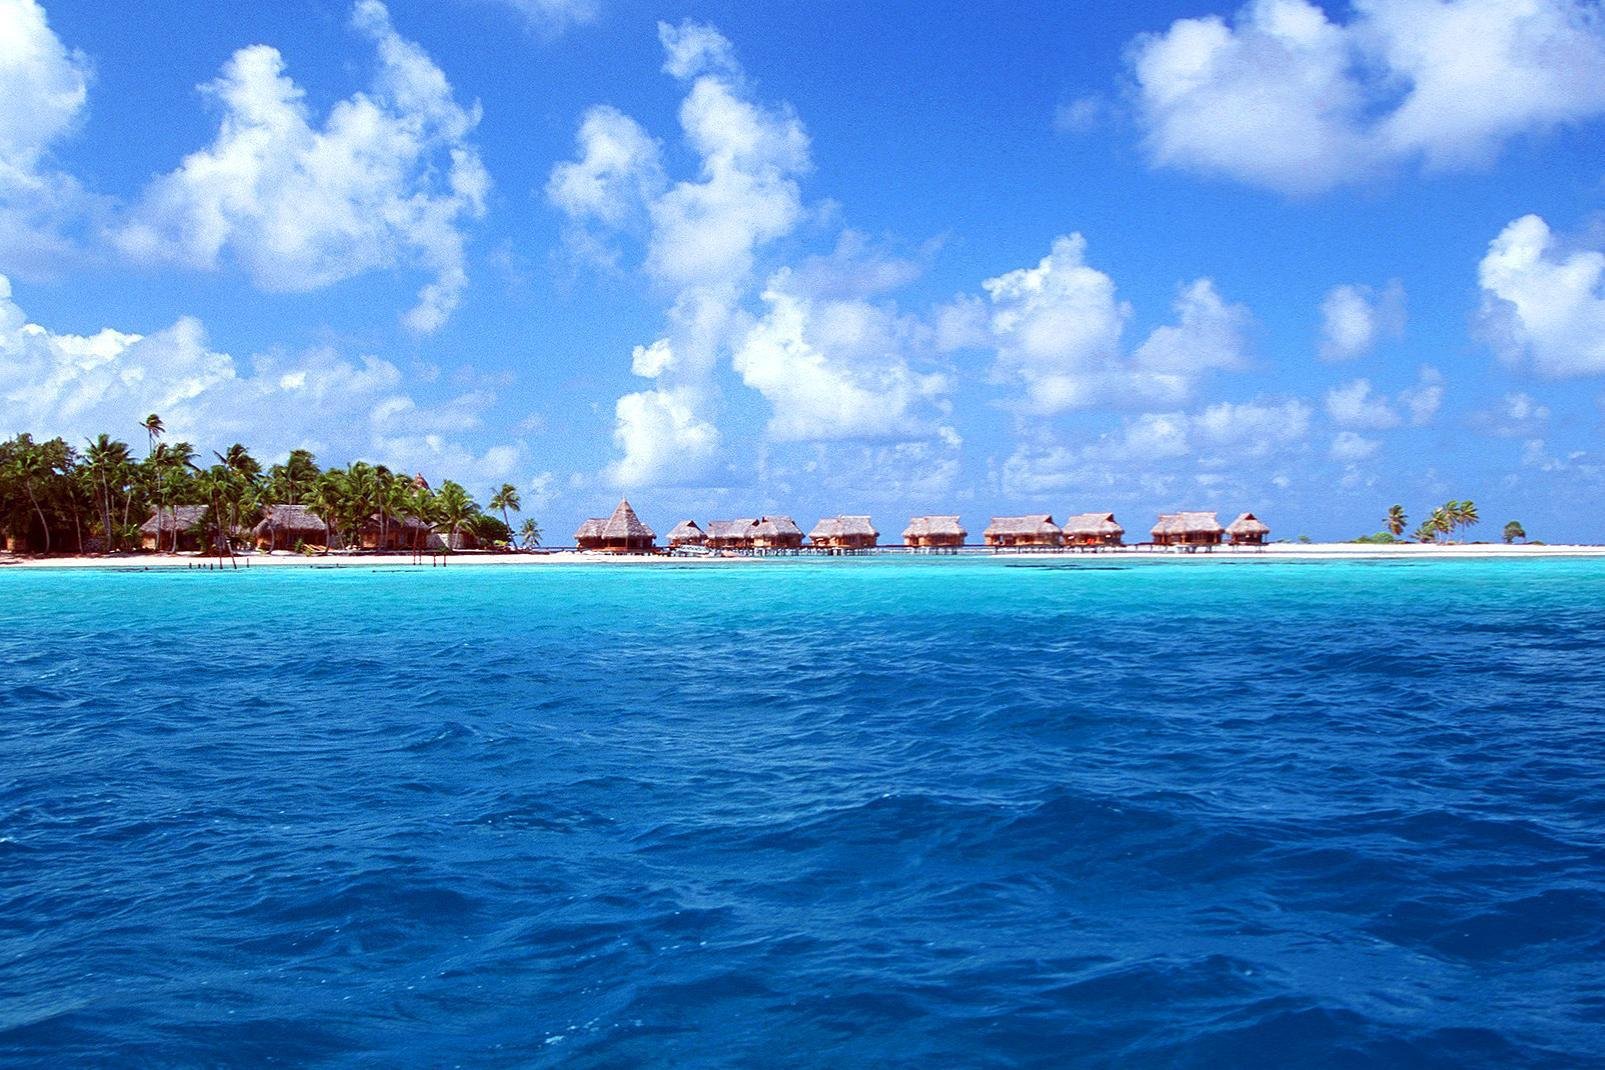 El Tikehau es un atolón, también llamado isla baja, un antiguo volcán desaparecido bajo las aguas. Su anillo de coral, que representa la extensión del antiguo volcán, mide 28 km de diámetro. Los islotes emergentes, formados por la acumulación de coral, están repletos de cocoteros, árboles filaos y almendros malabares. El atolón, magnífico y conservado, es conocido por sus playas de arena rosada, además ...